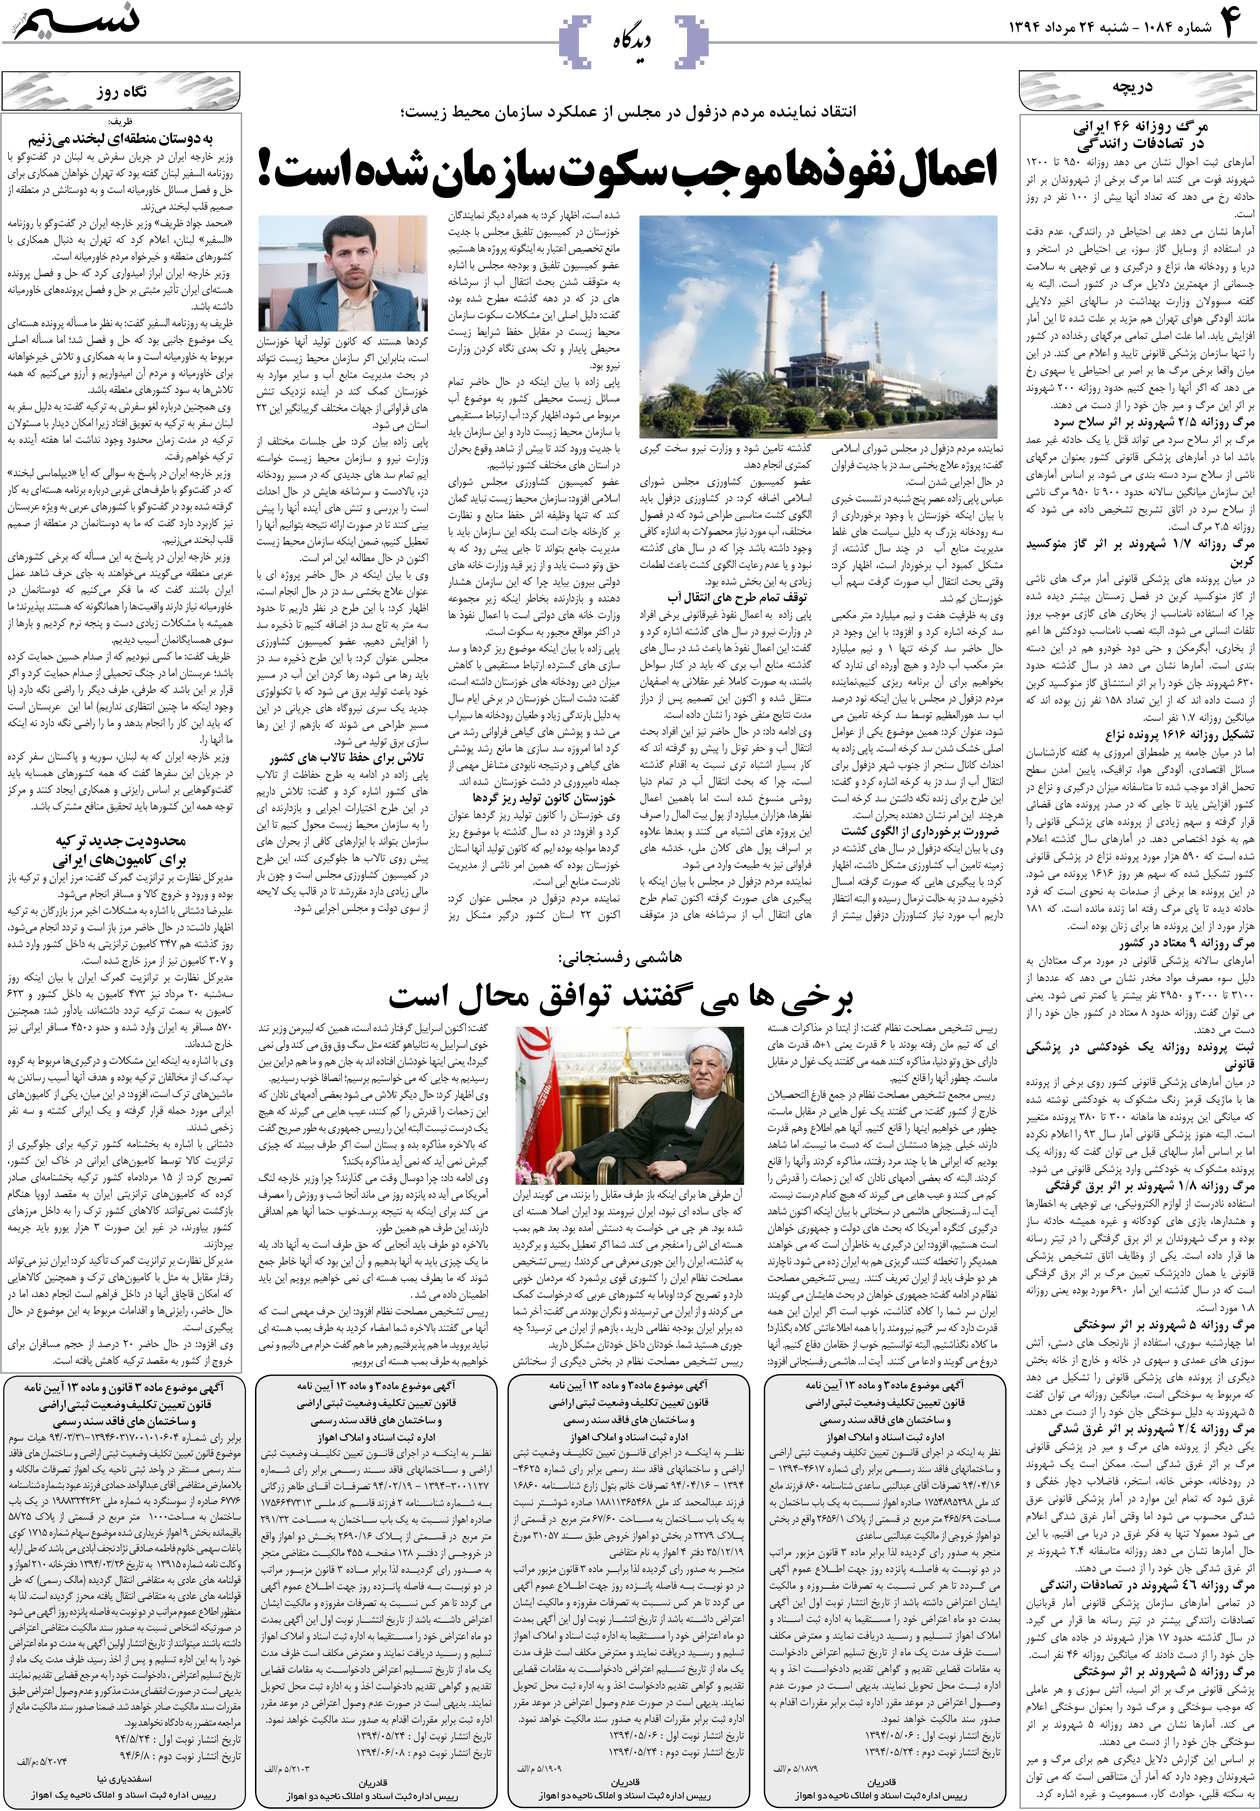 صفحه دیدگاه روزنامه نسیم شماره 1084